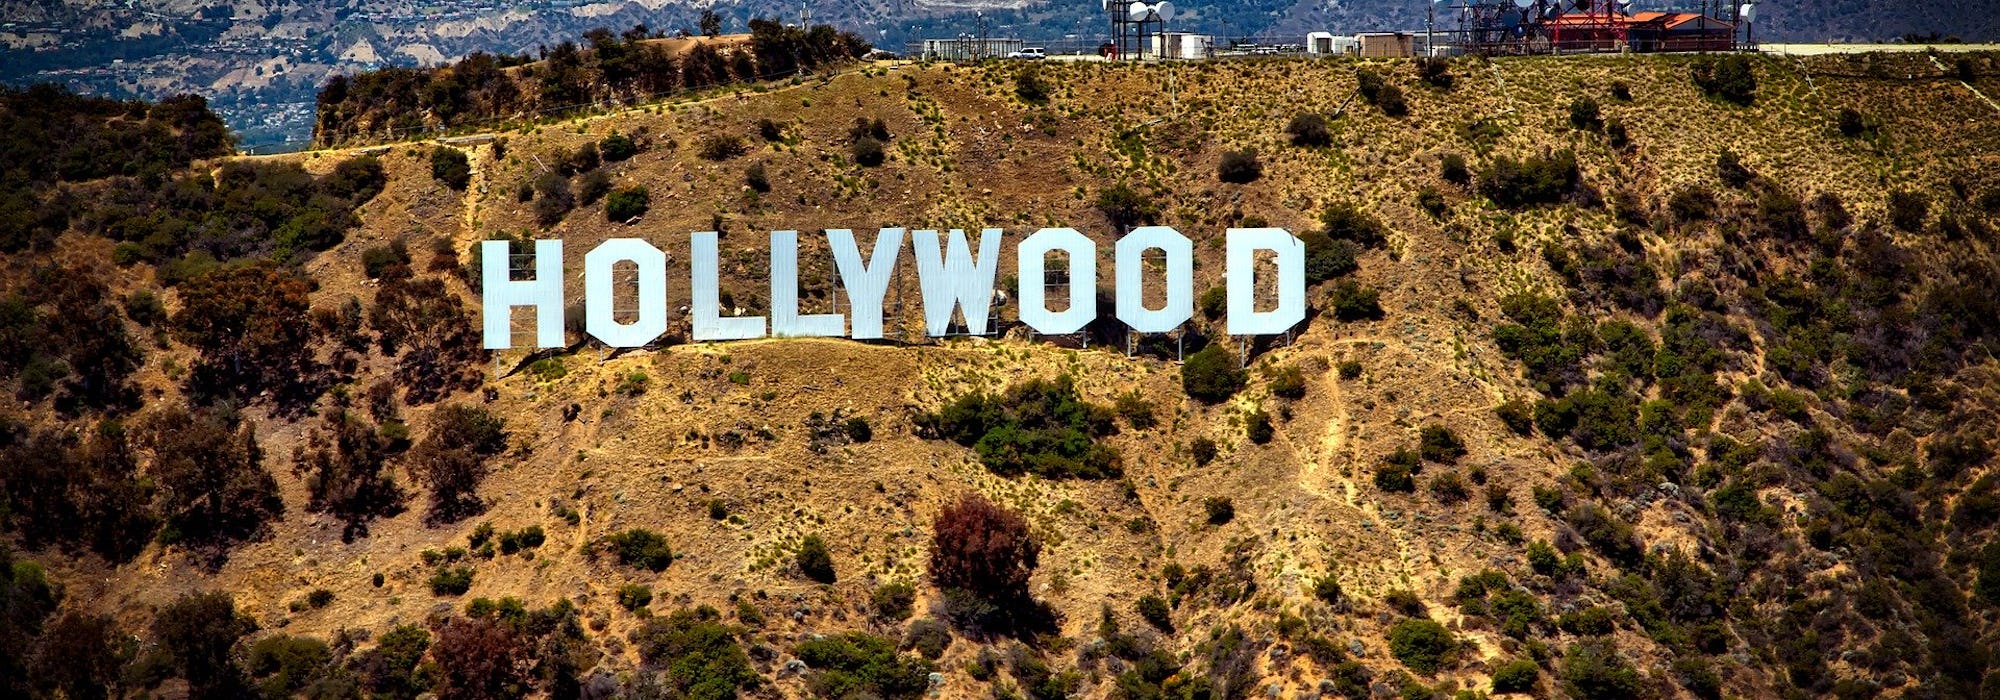 Den ikoniska Hollywood-skylten på bergskanten.